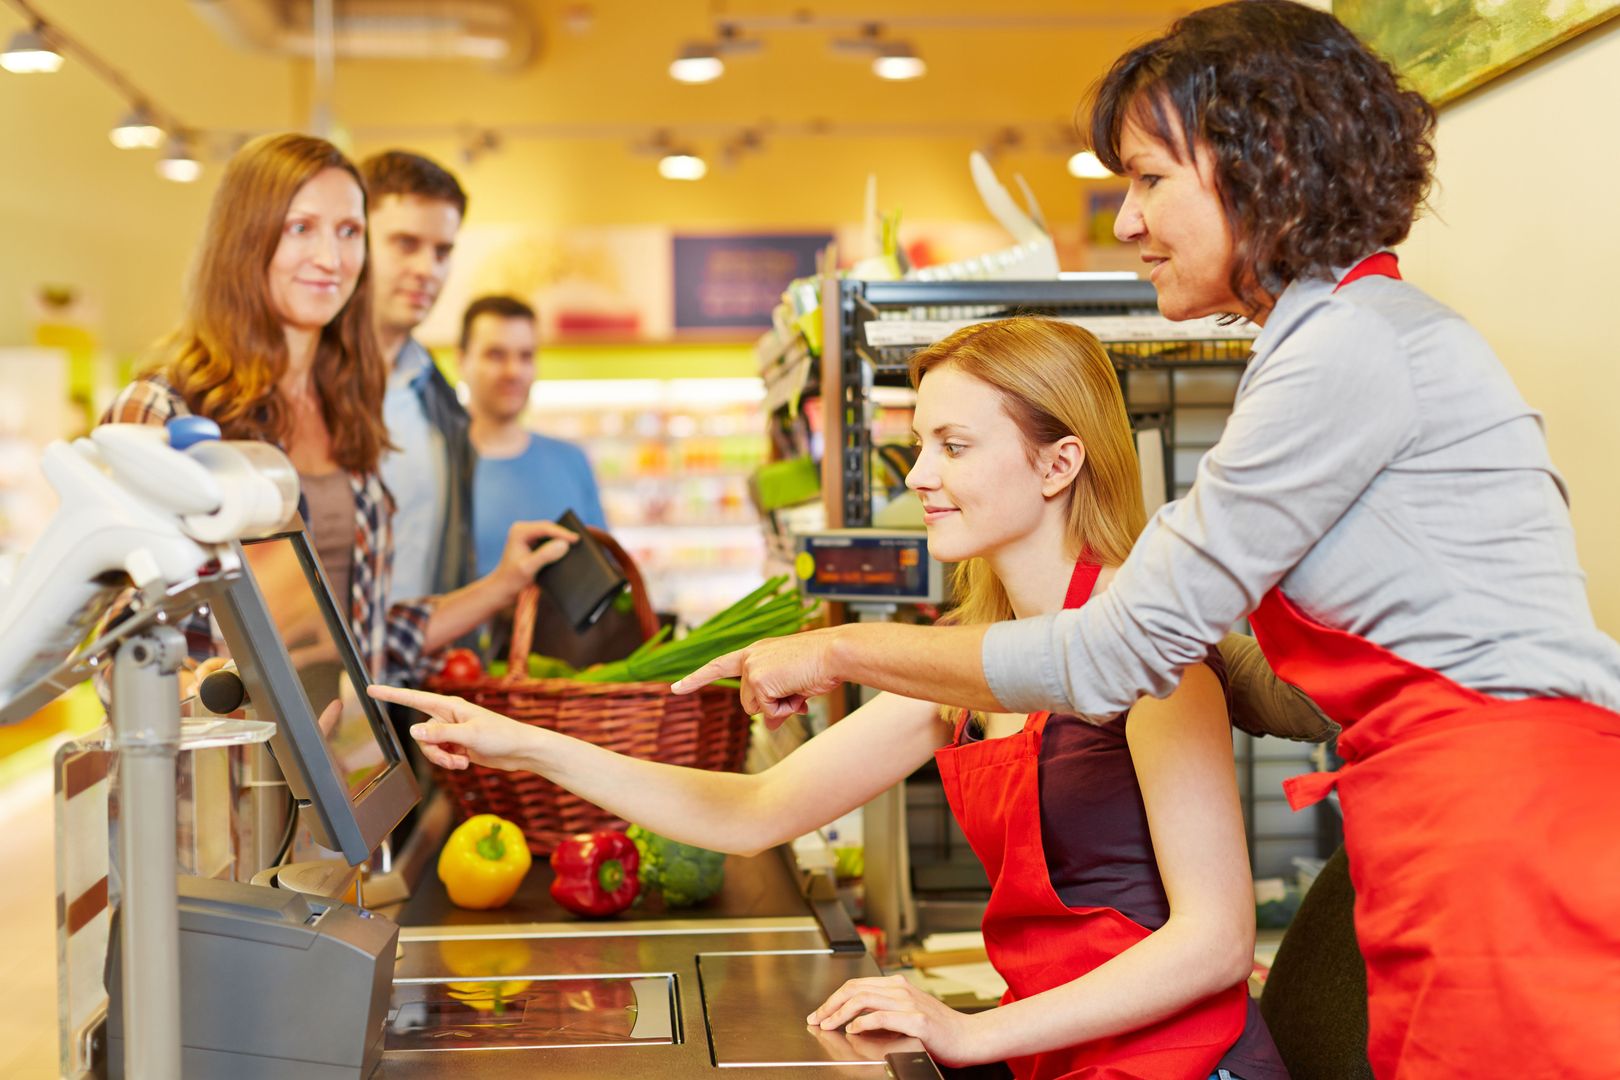 ��ltere Verk��ufer hilft einer neuen Kassiererin an der Kasse im Supermarkt